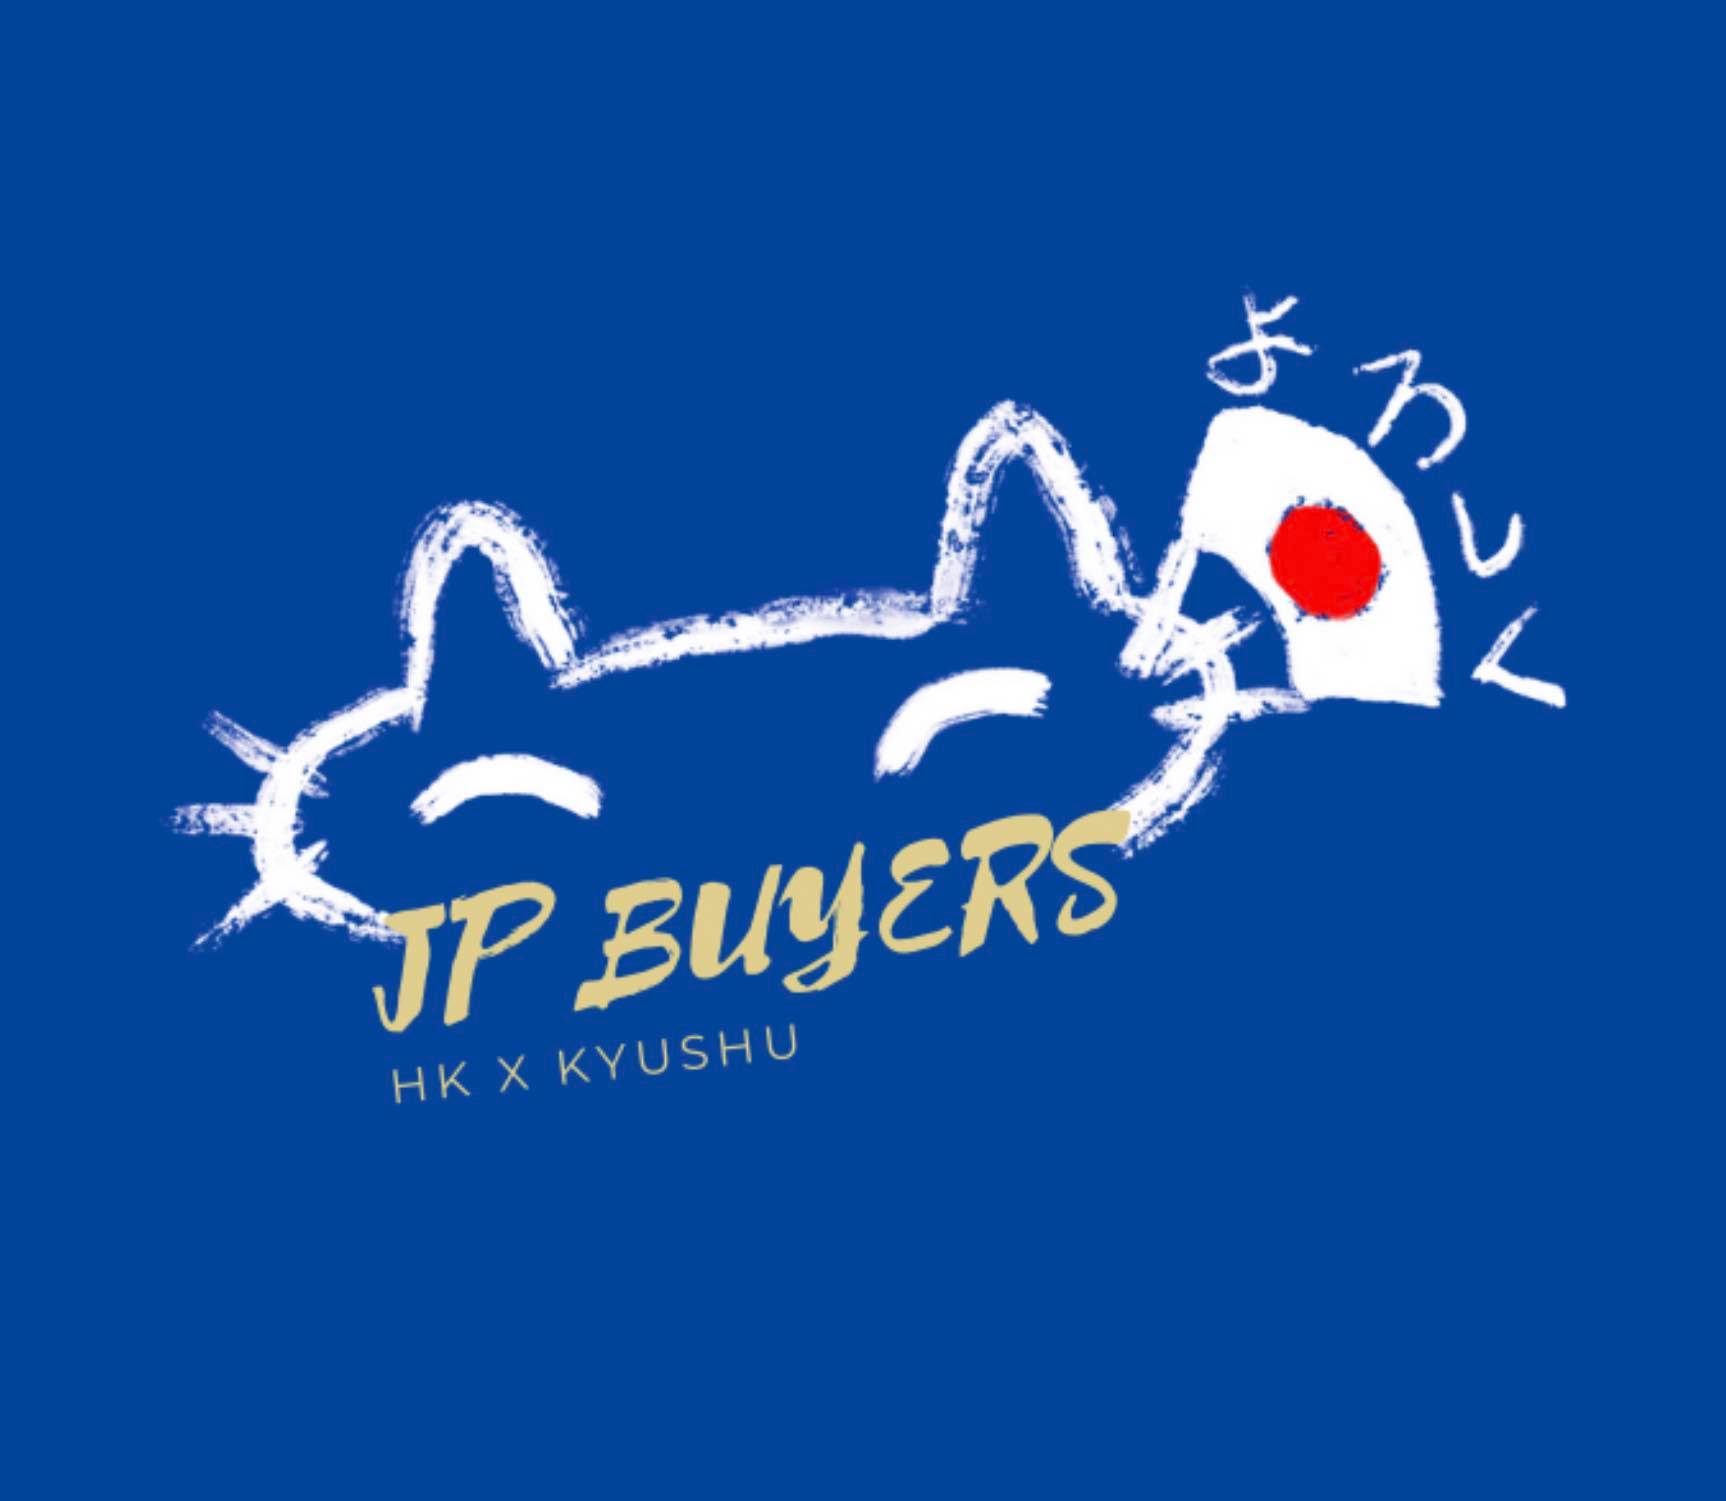 JP Buyers